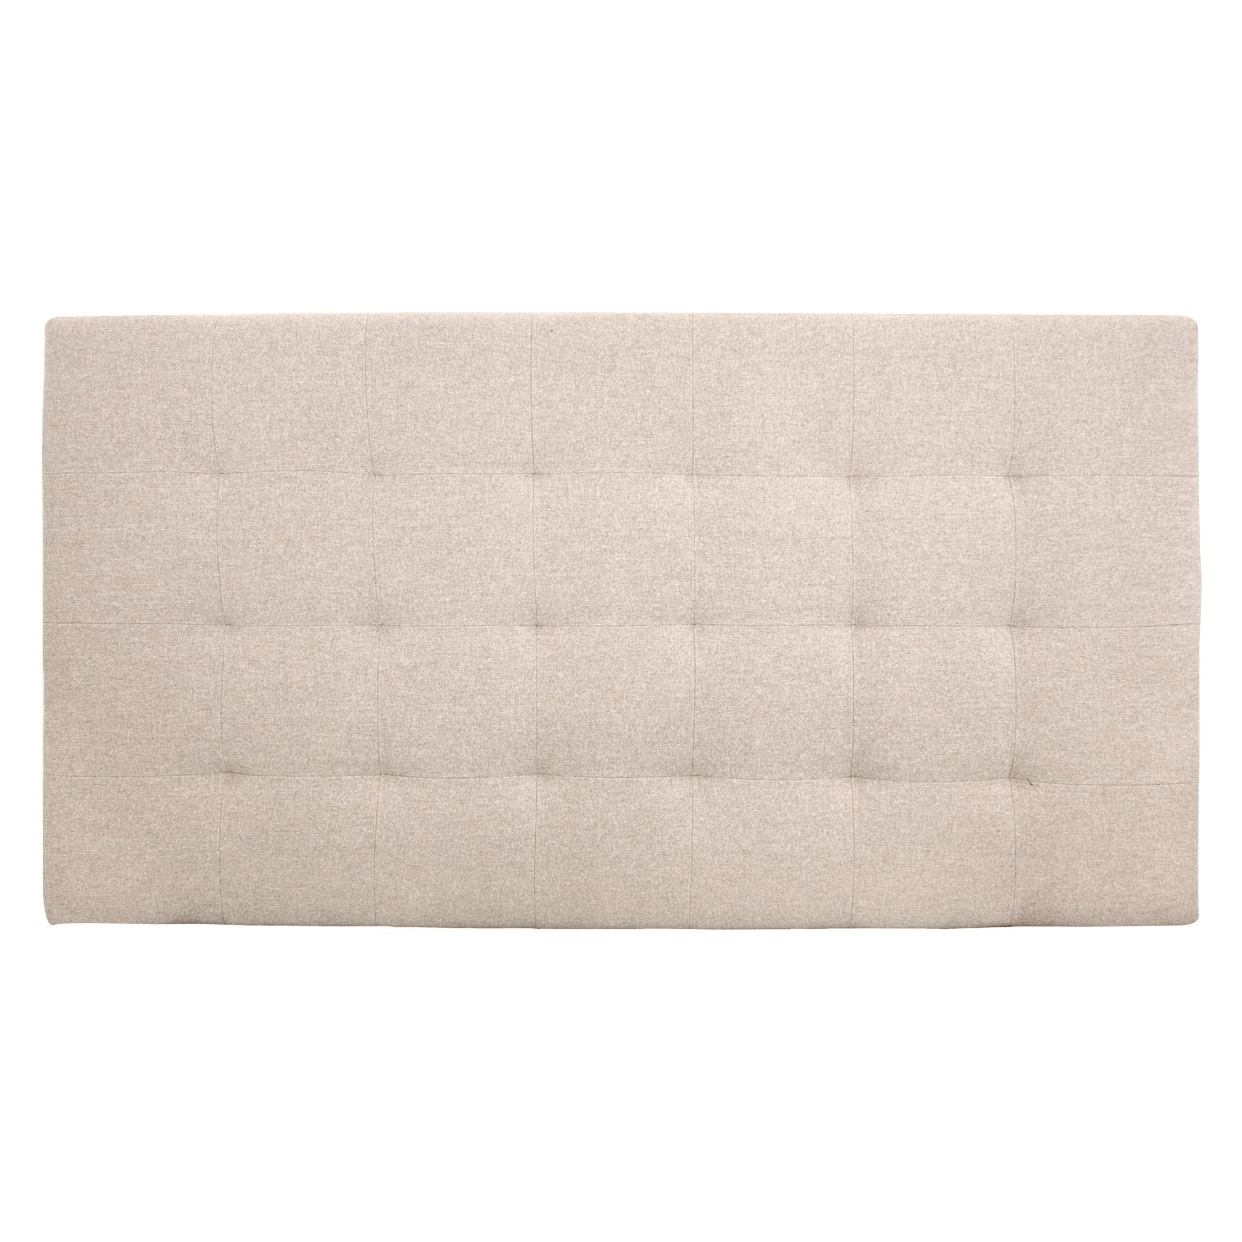 Tête de lit polyester plis couleur beige 180x80cm